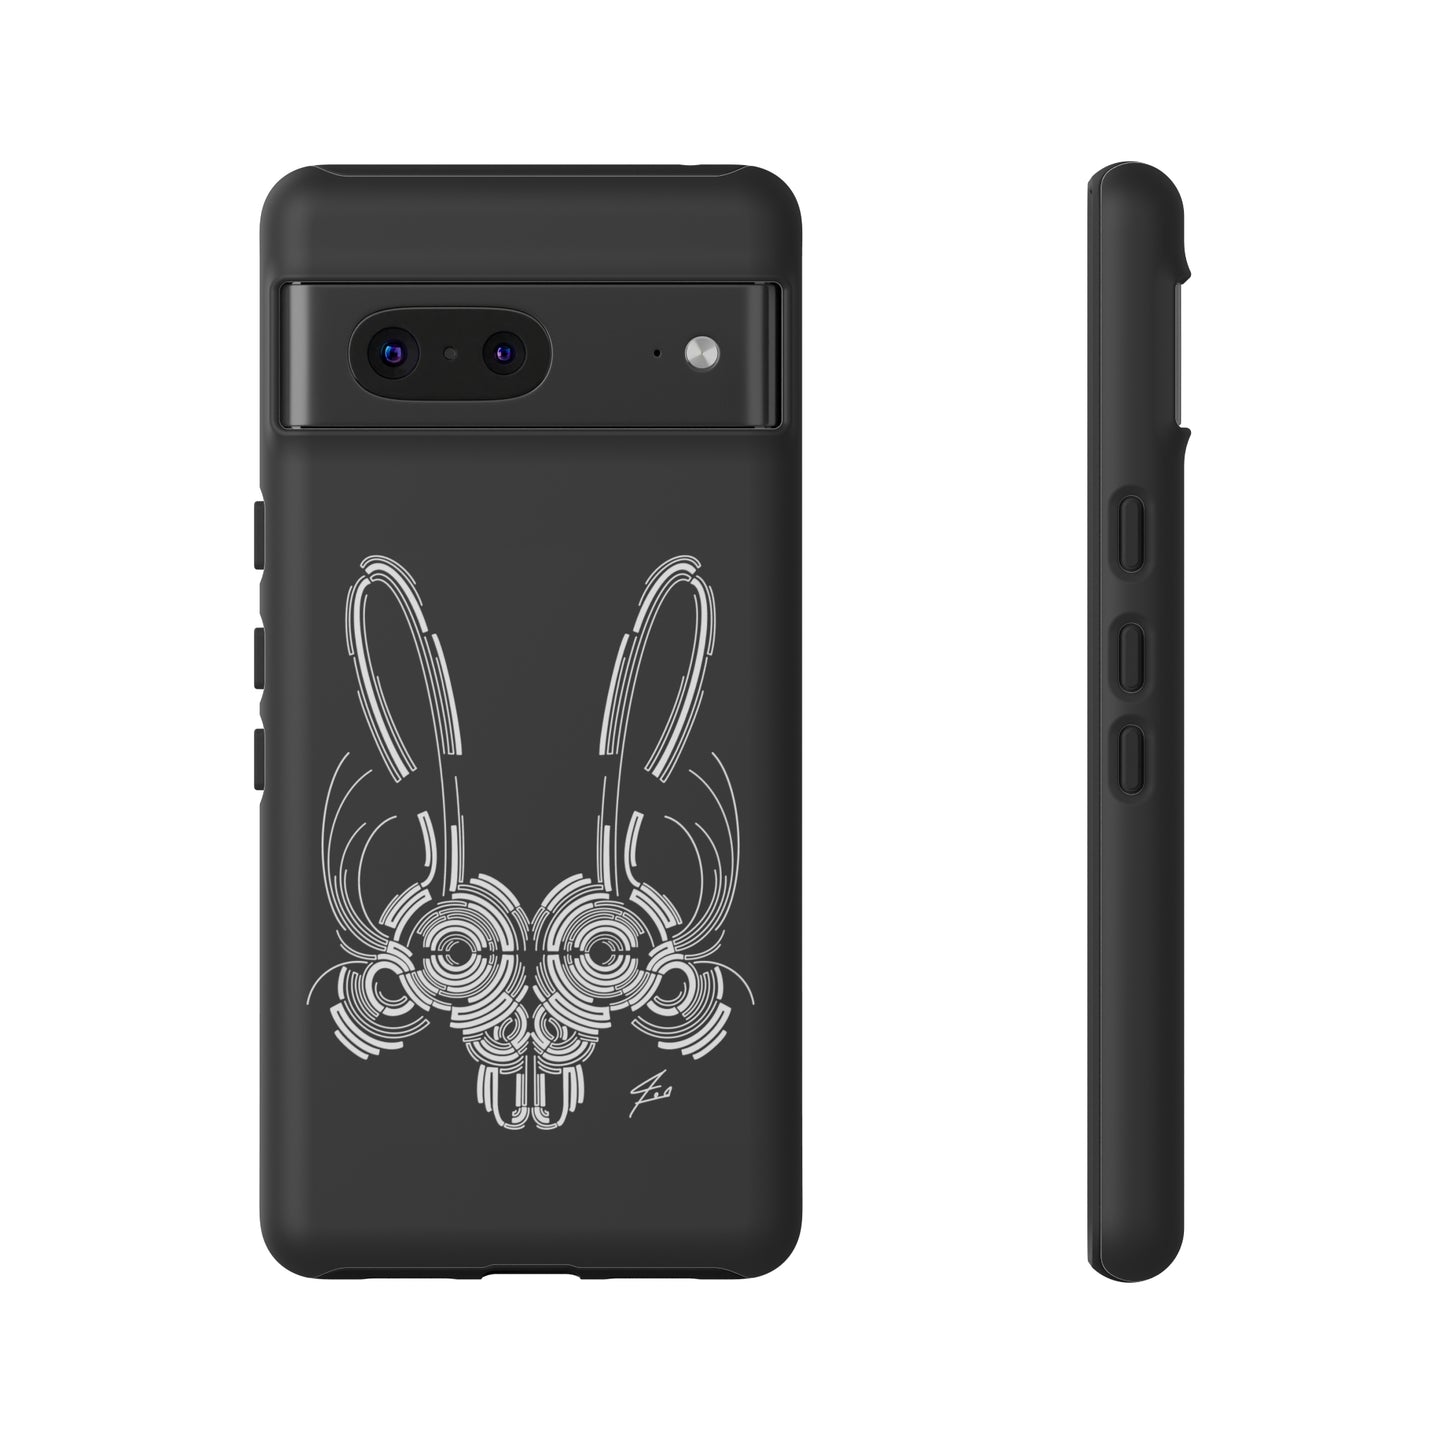 Bunny Design Tough Cases